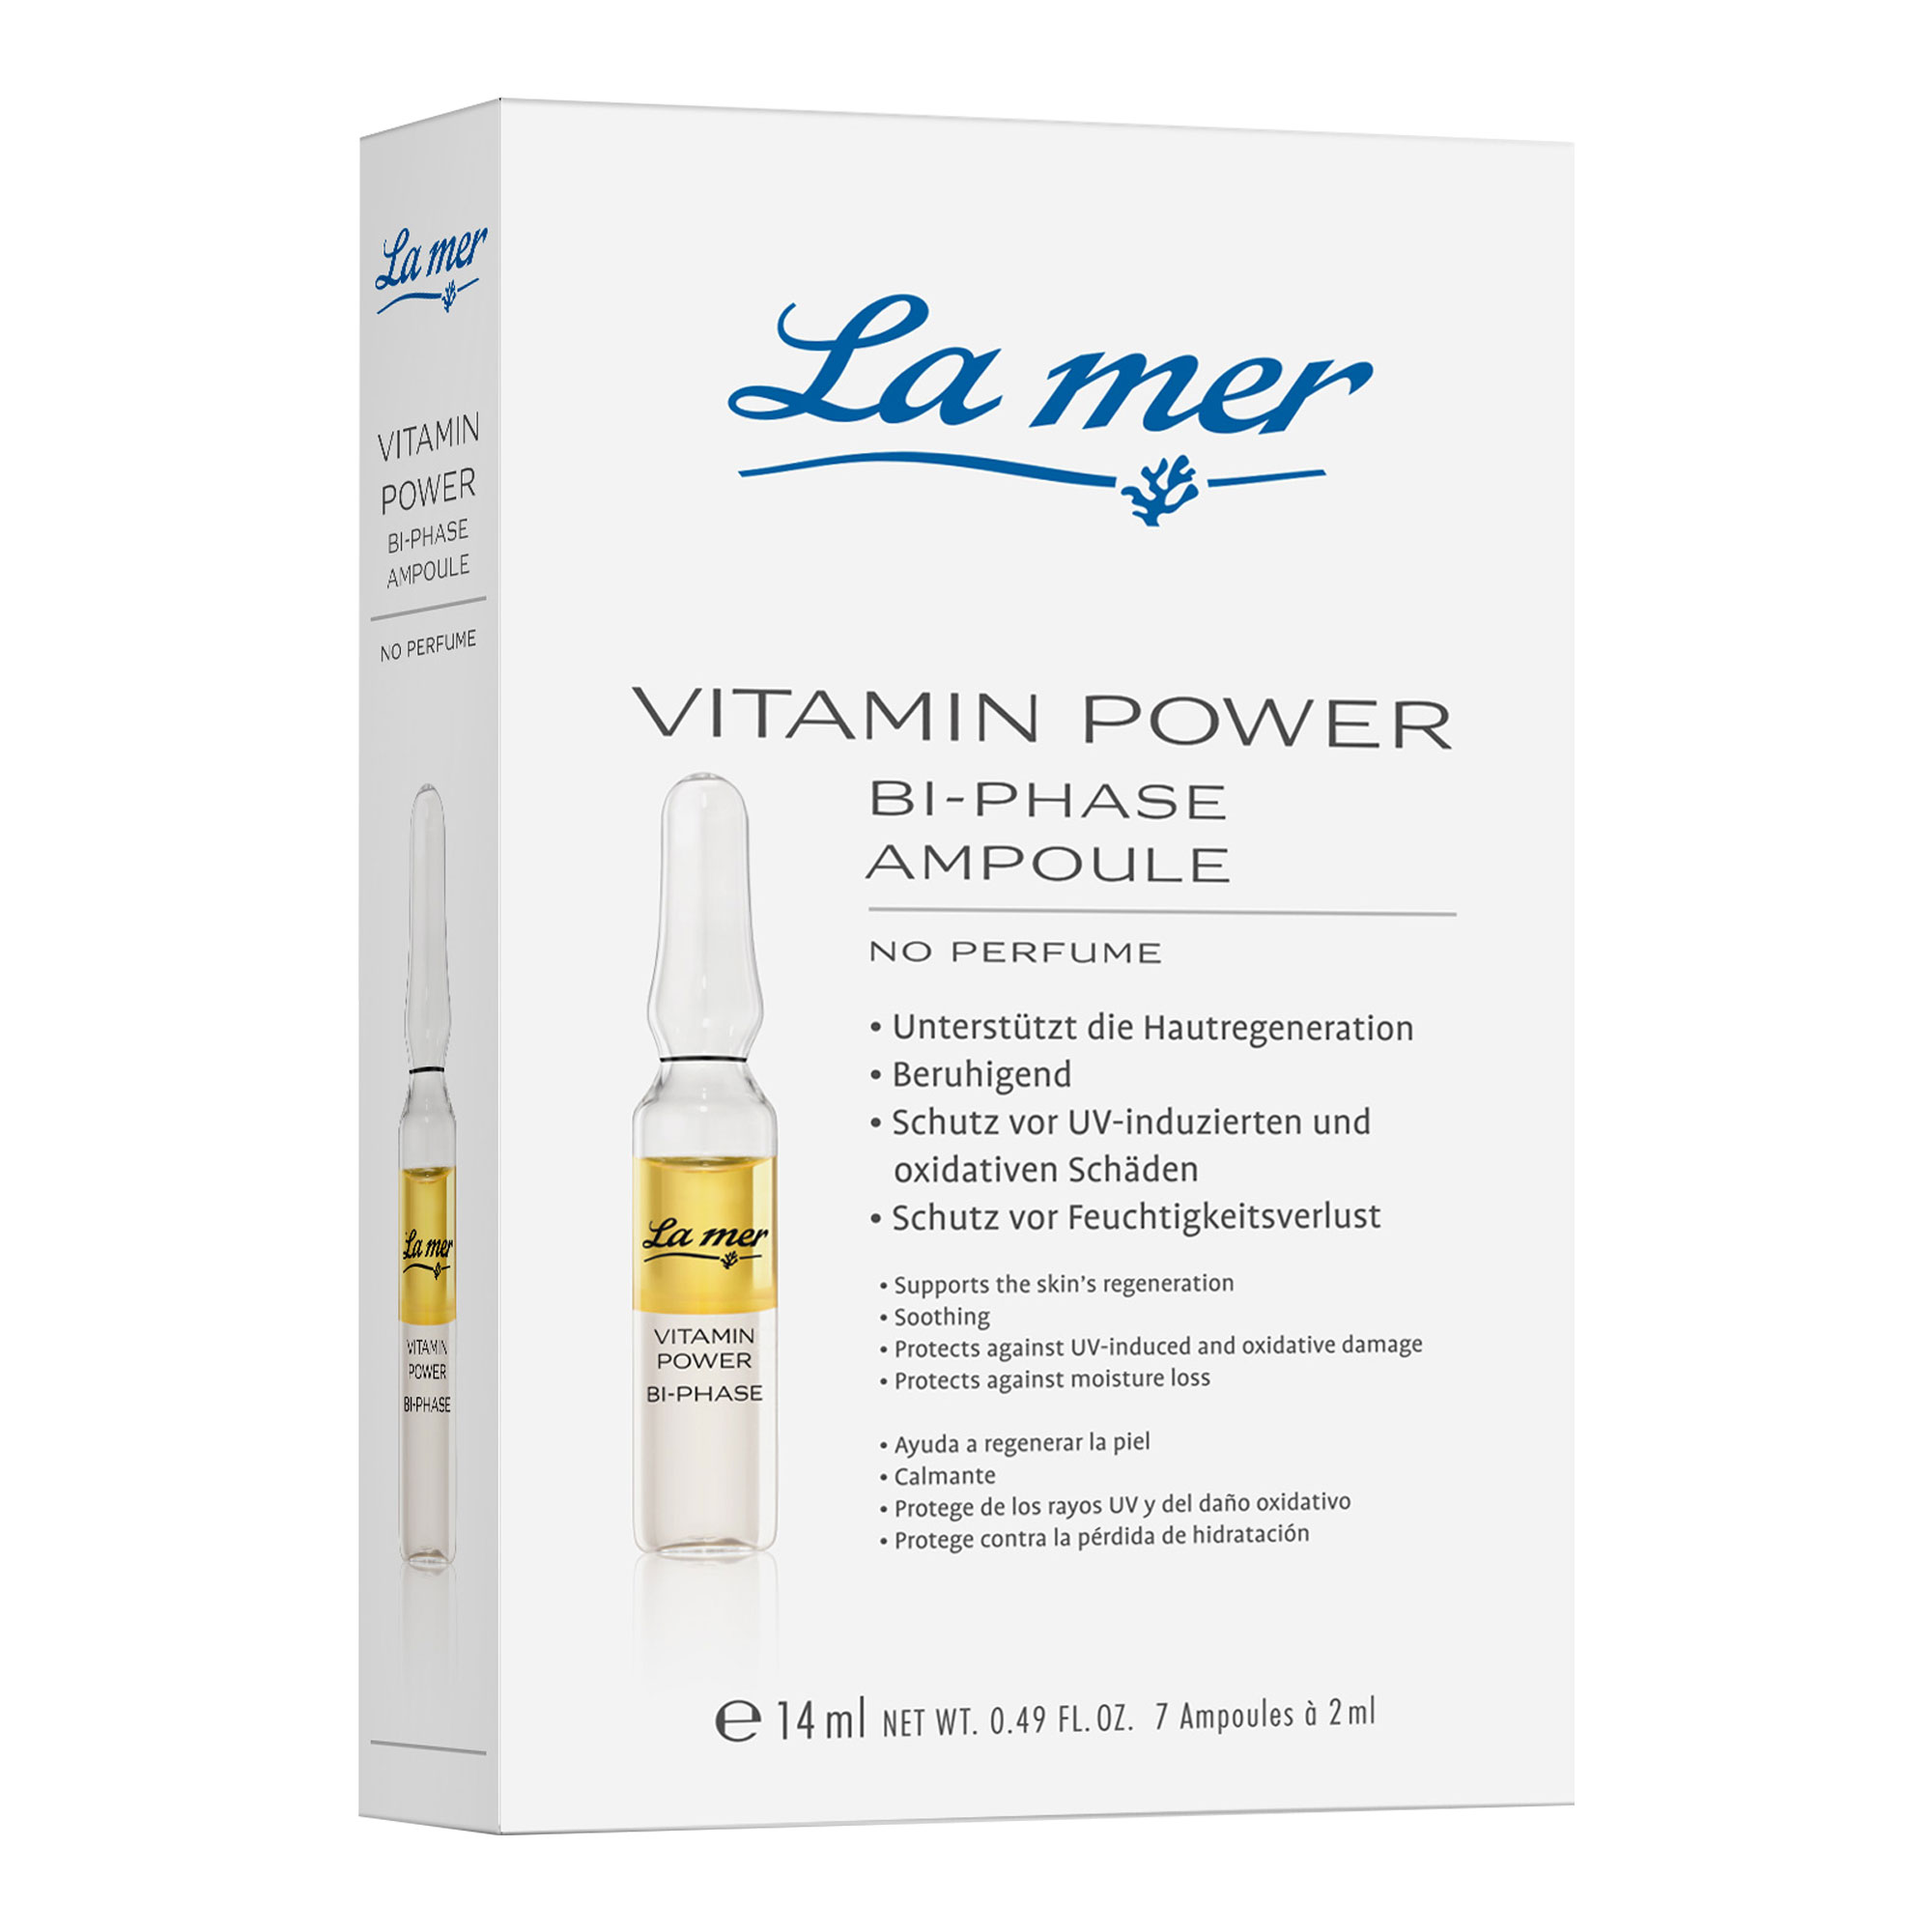 Wirkstoffkonzentrat mit Vitaminpower zur aktiven Regeneration der Haut.